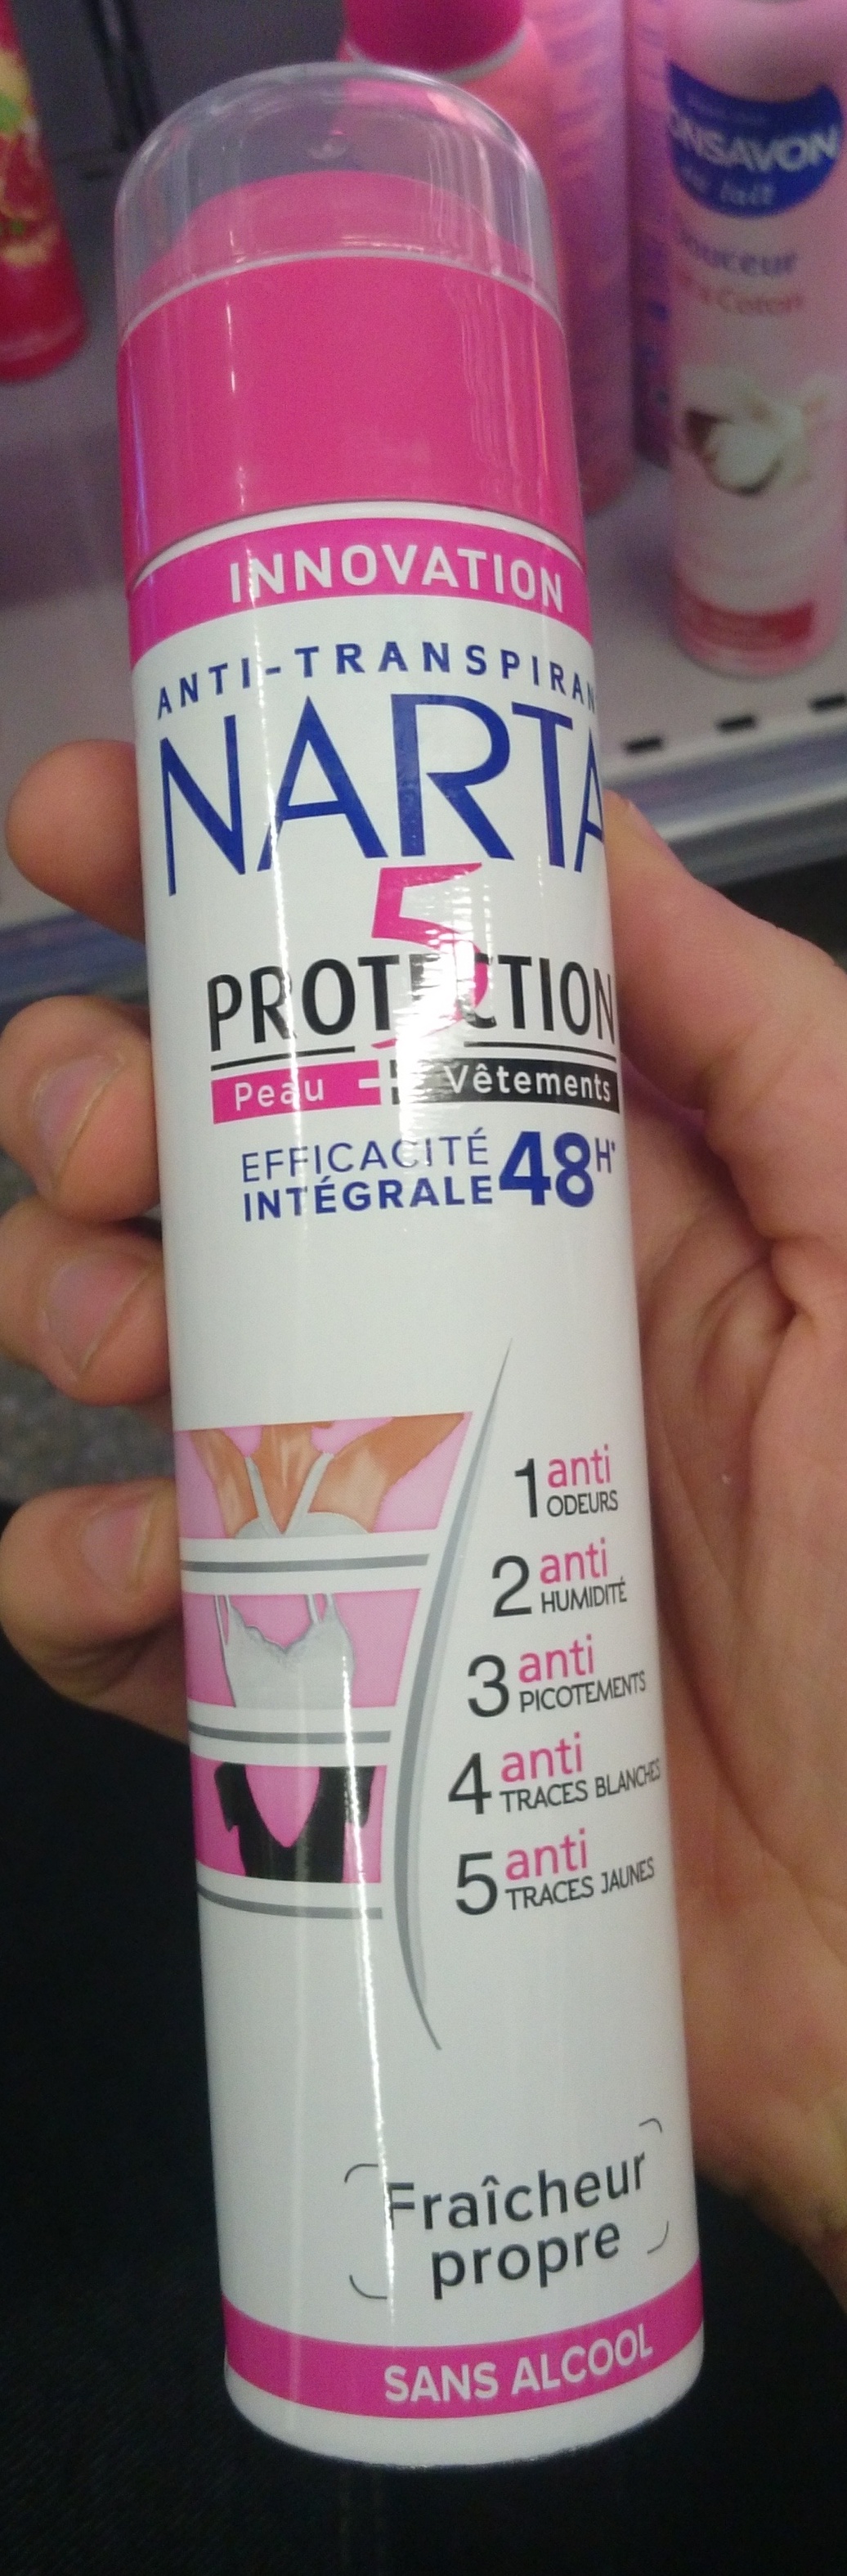 5 protections efficacité intégrale 48h - Product - fr